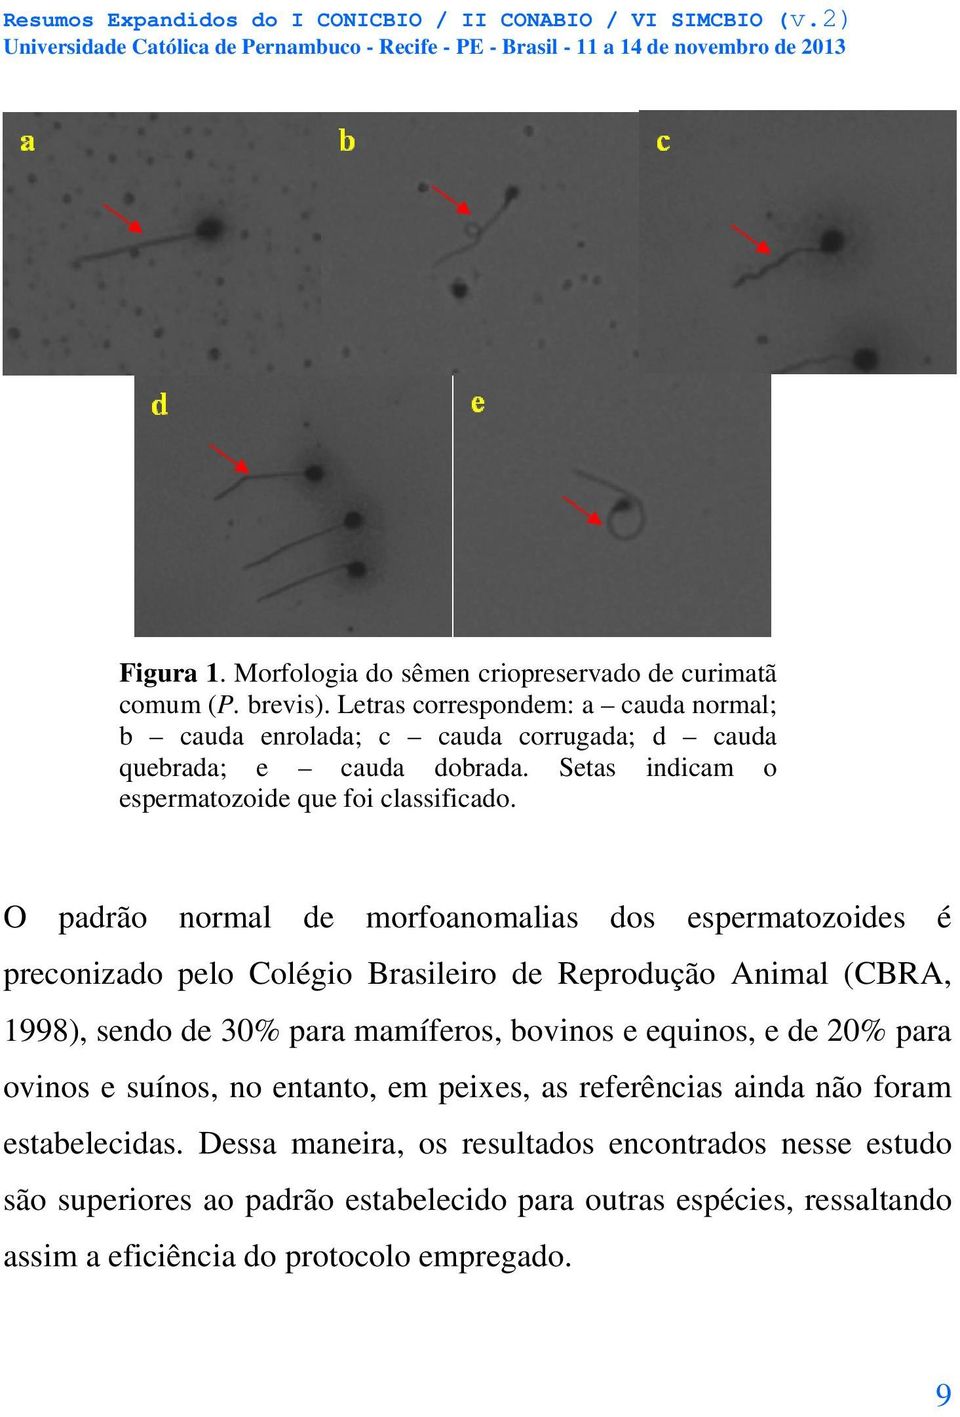 O padrão normal de morfoanomalias dos espermatozoides é preconizado pelo Colégio Brasileiro de Reprodução Animal (CBRA, 1998), sendo de 30% para mamíferos, bovinos e